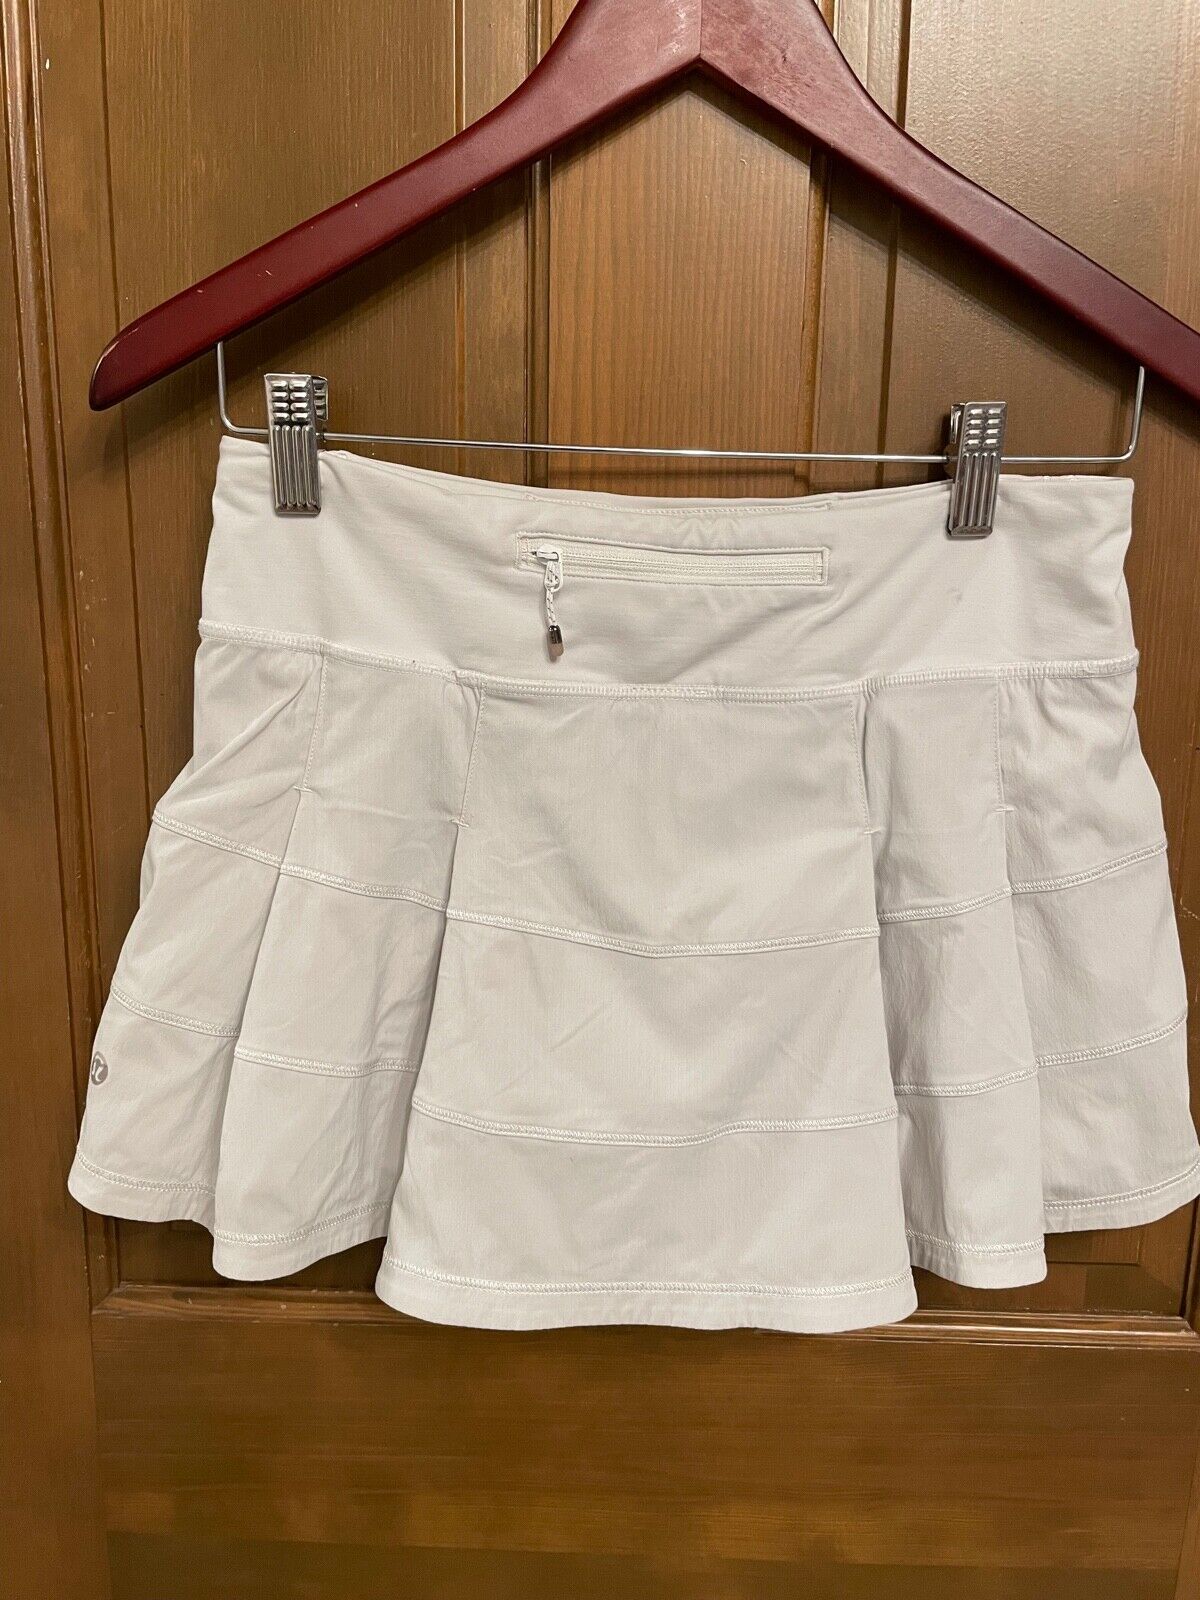 Lululemon size 4 Pace Rival skirt/skort white